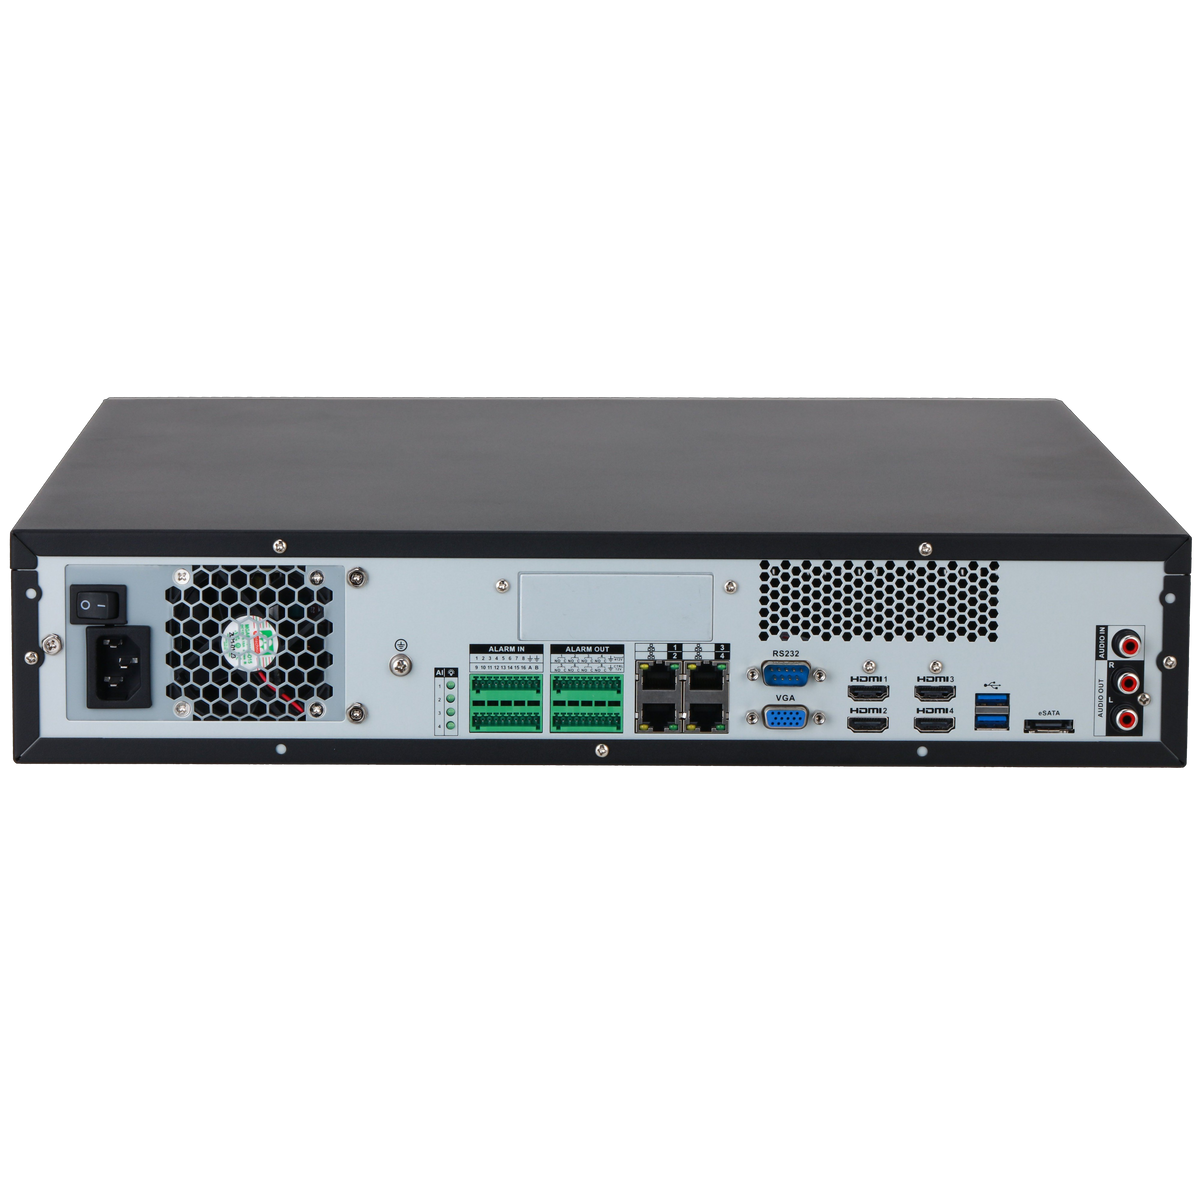 DAHUA IVSS7108/H 128CH 2U Intelligent Video Surveillance Server